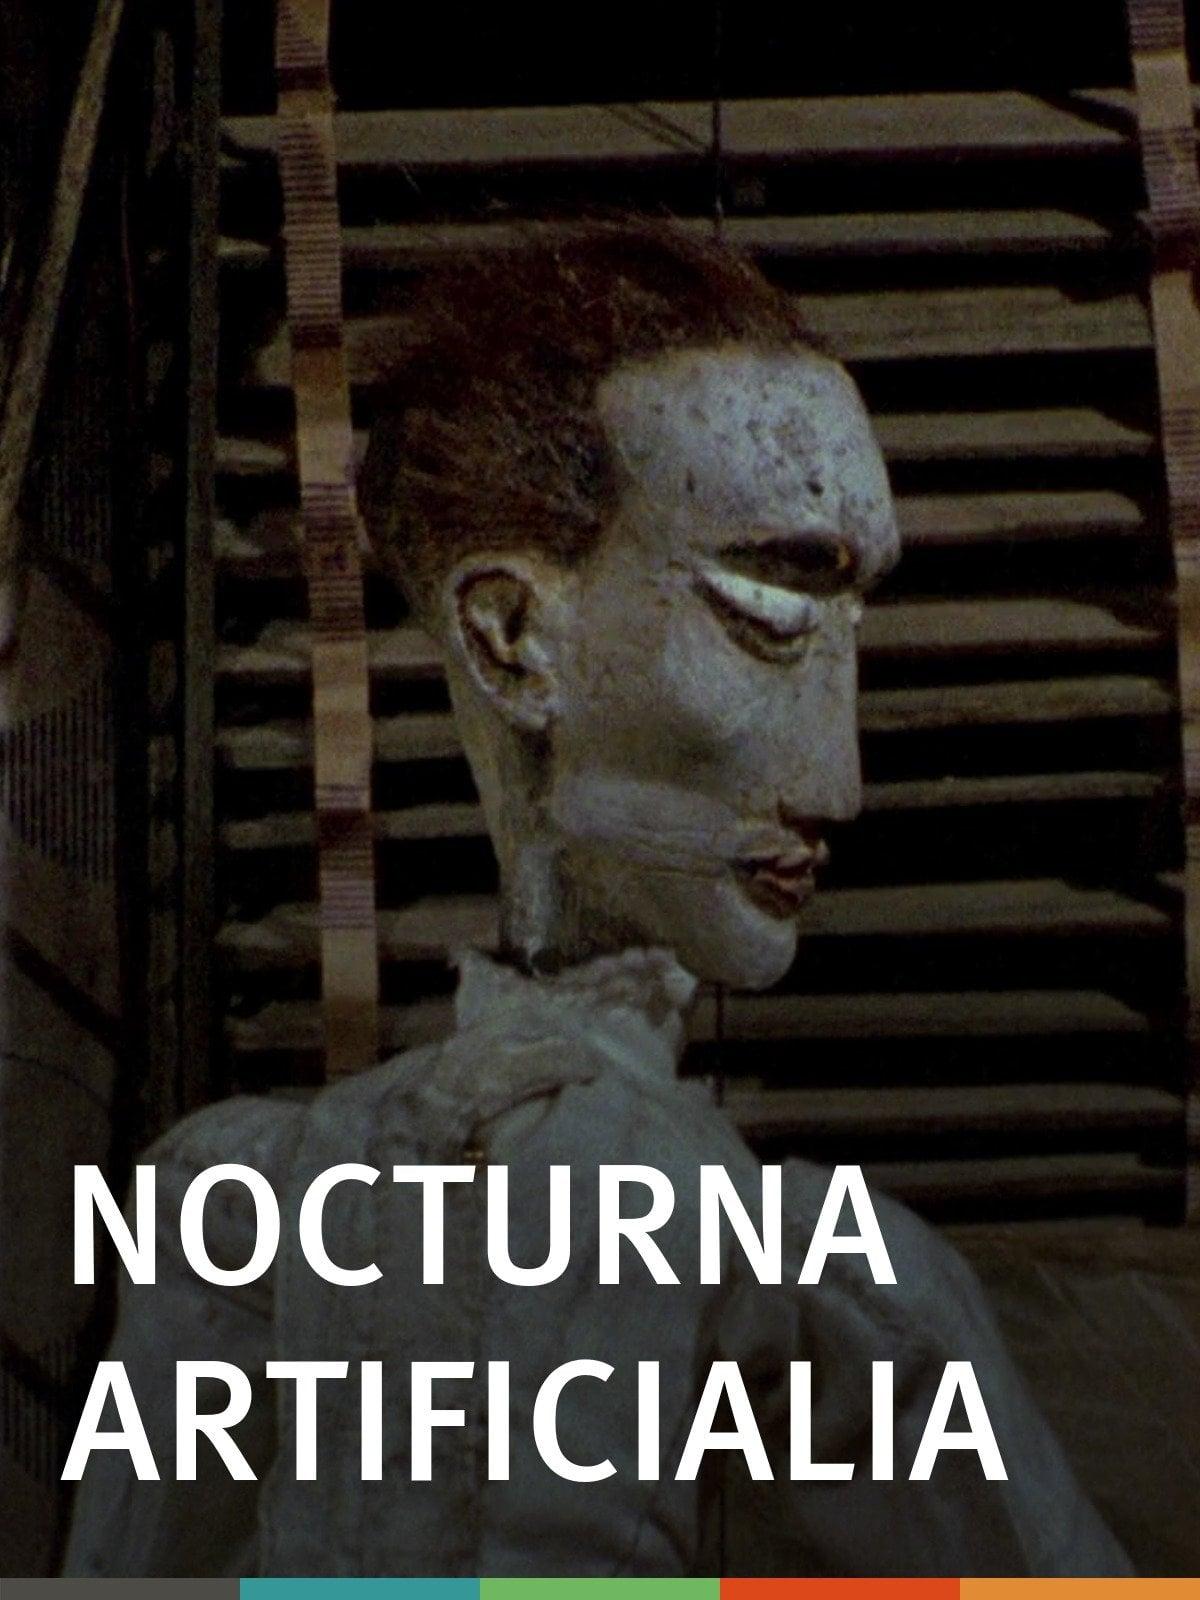 Nocturna Artificialia poster